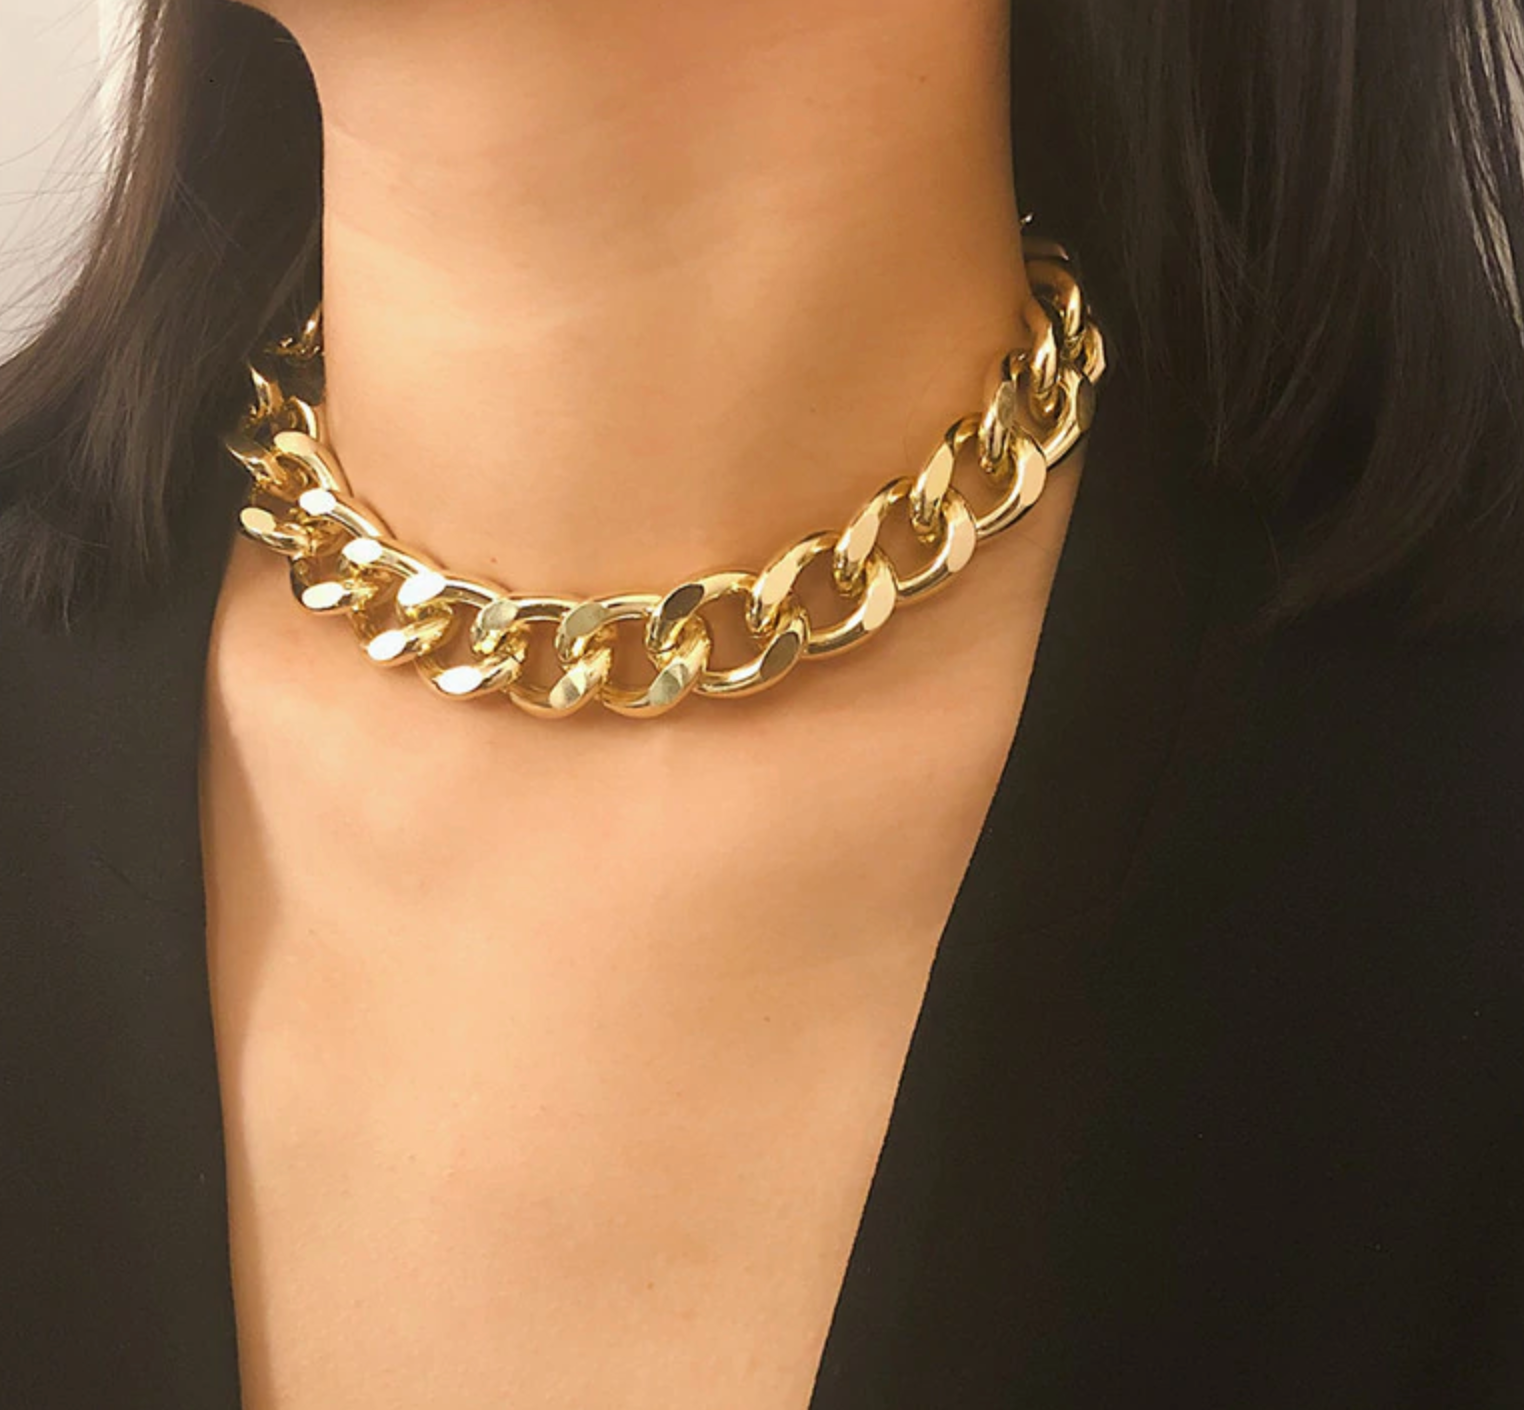 Catholic Jewelry - Chunky Gold Statement Necklaces – The Little Catholic